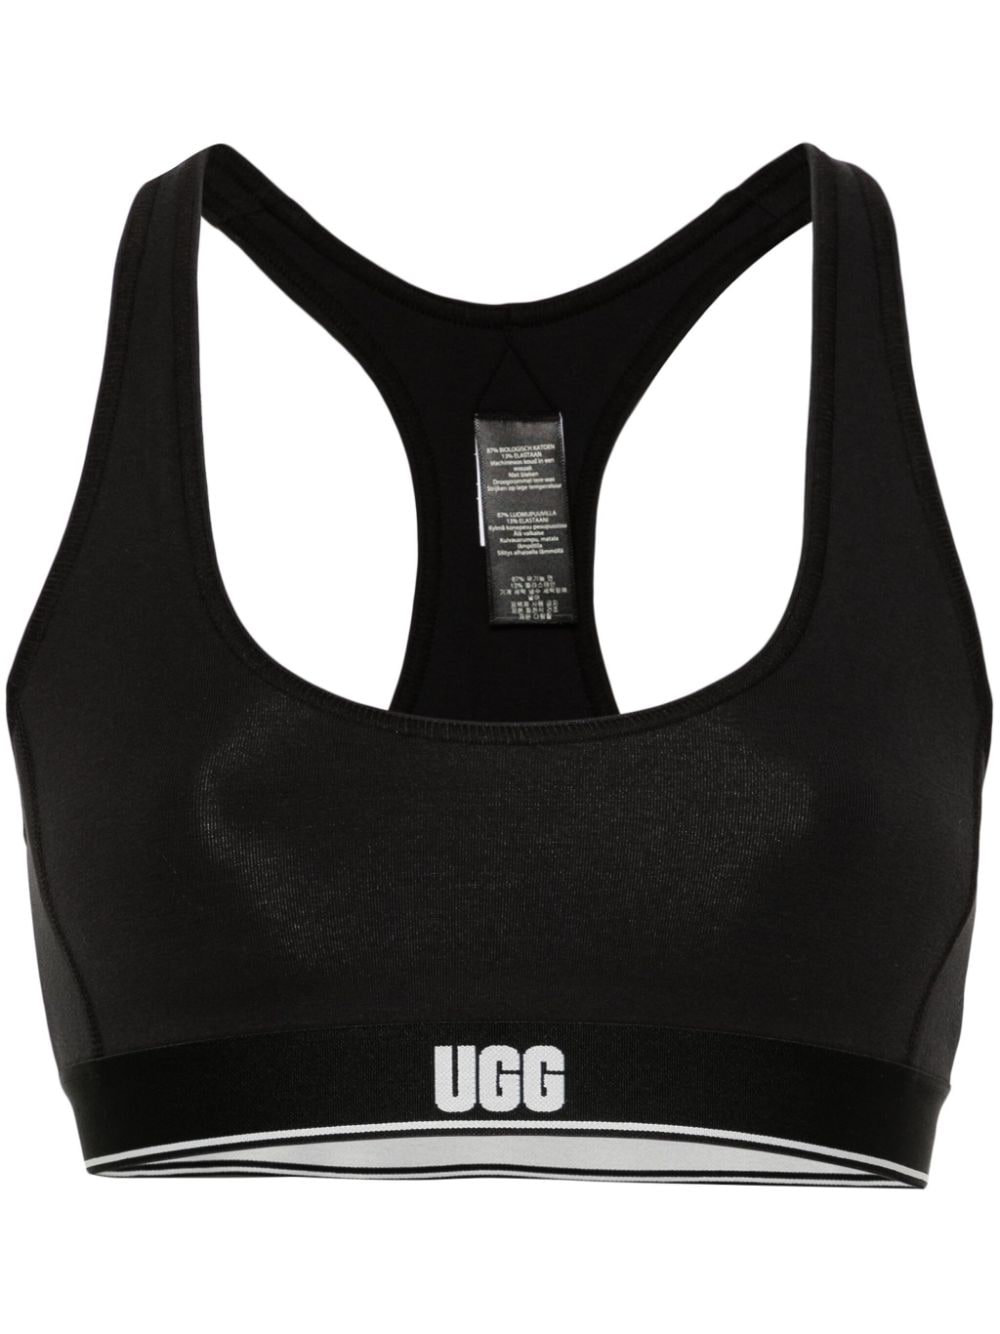 UGG Missy logo-underband sports bra - Black von UGG